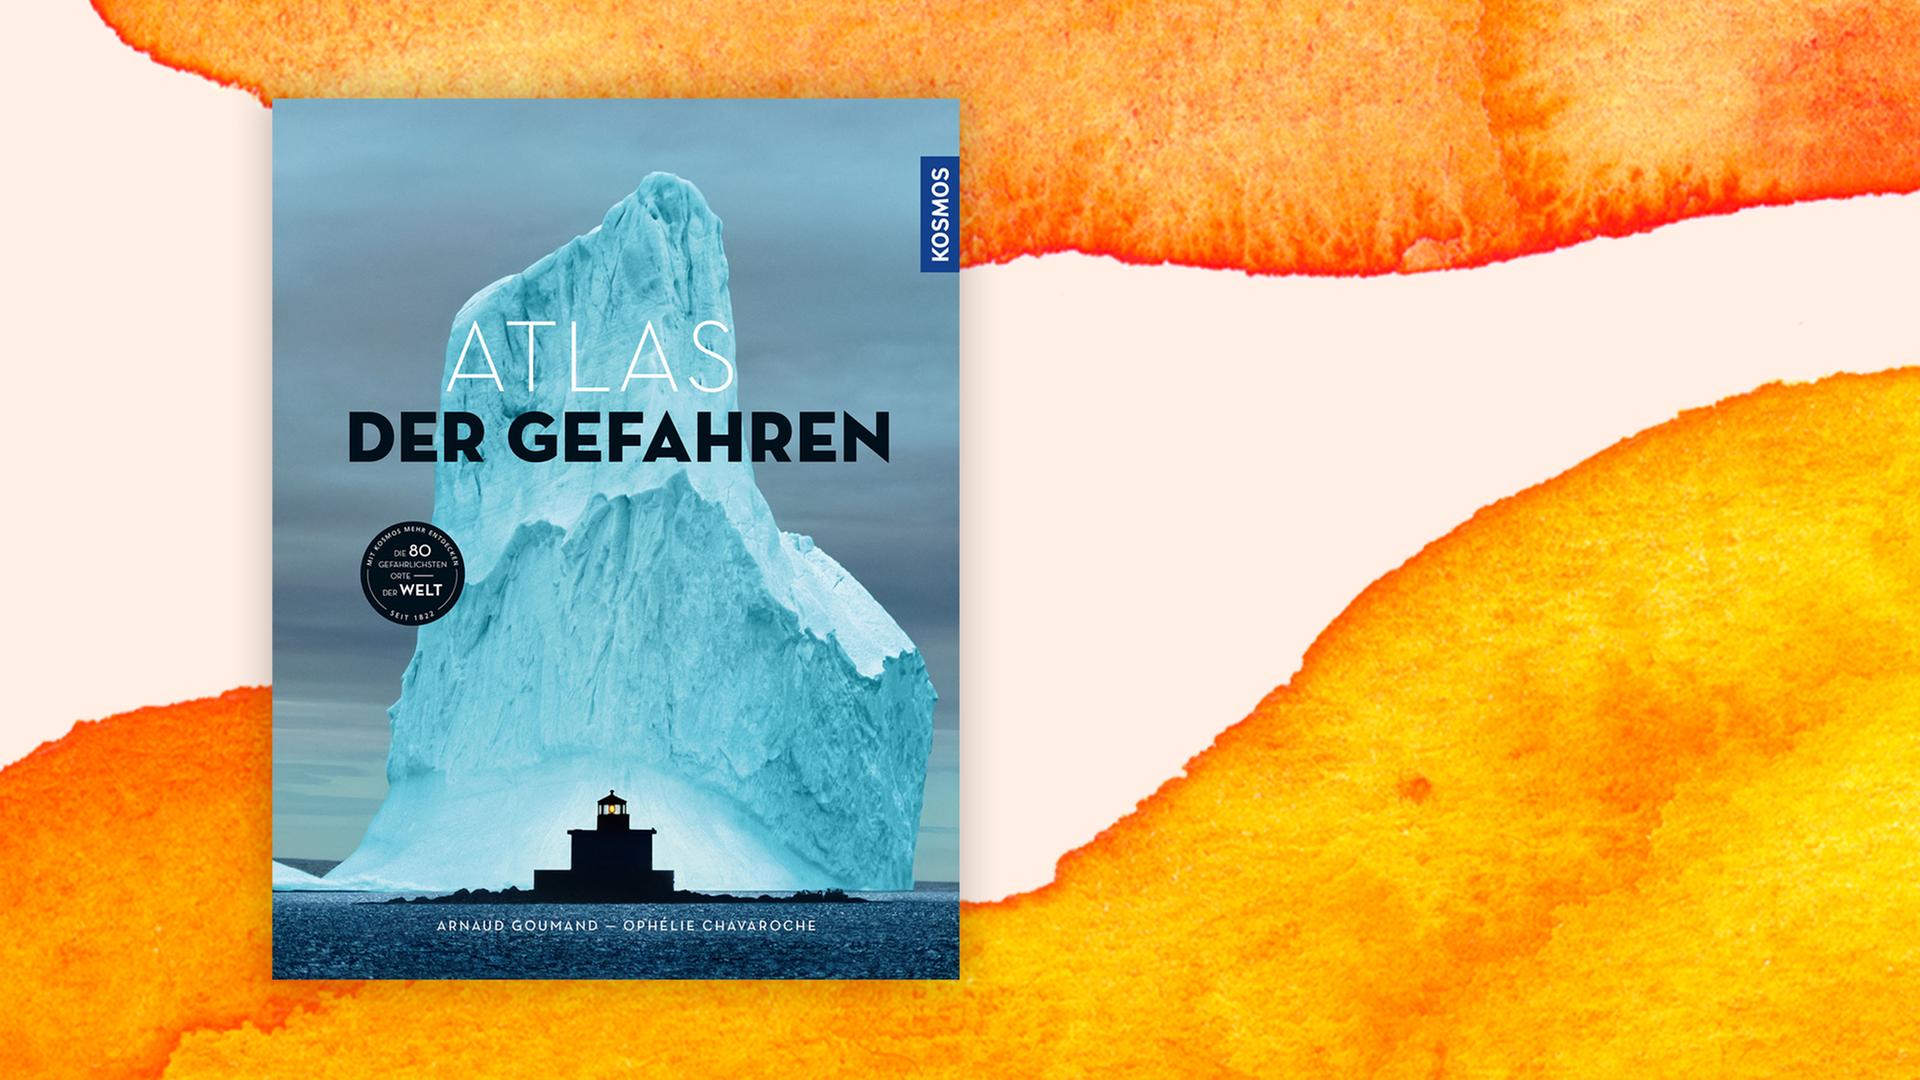 Buchcover mit der Fotografie eines hochen Eisbergs, vor einem schwarzen, illustrieren Leuchturm.